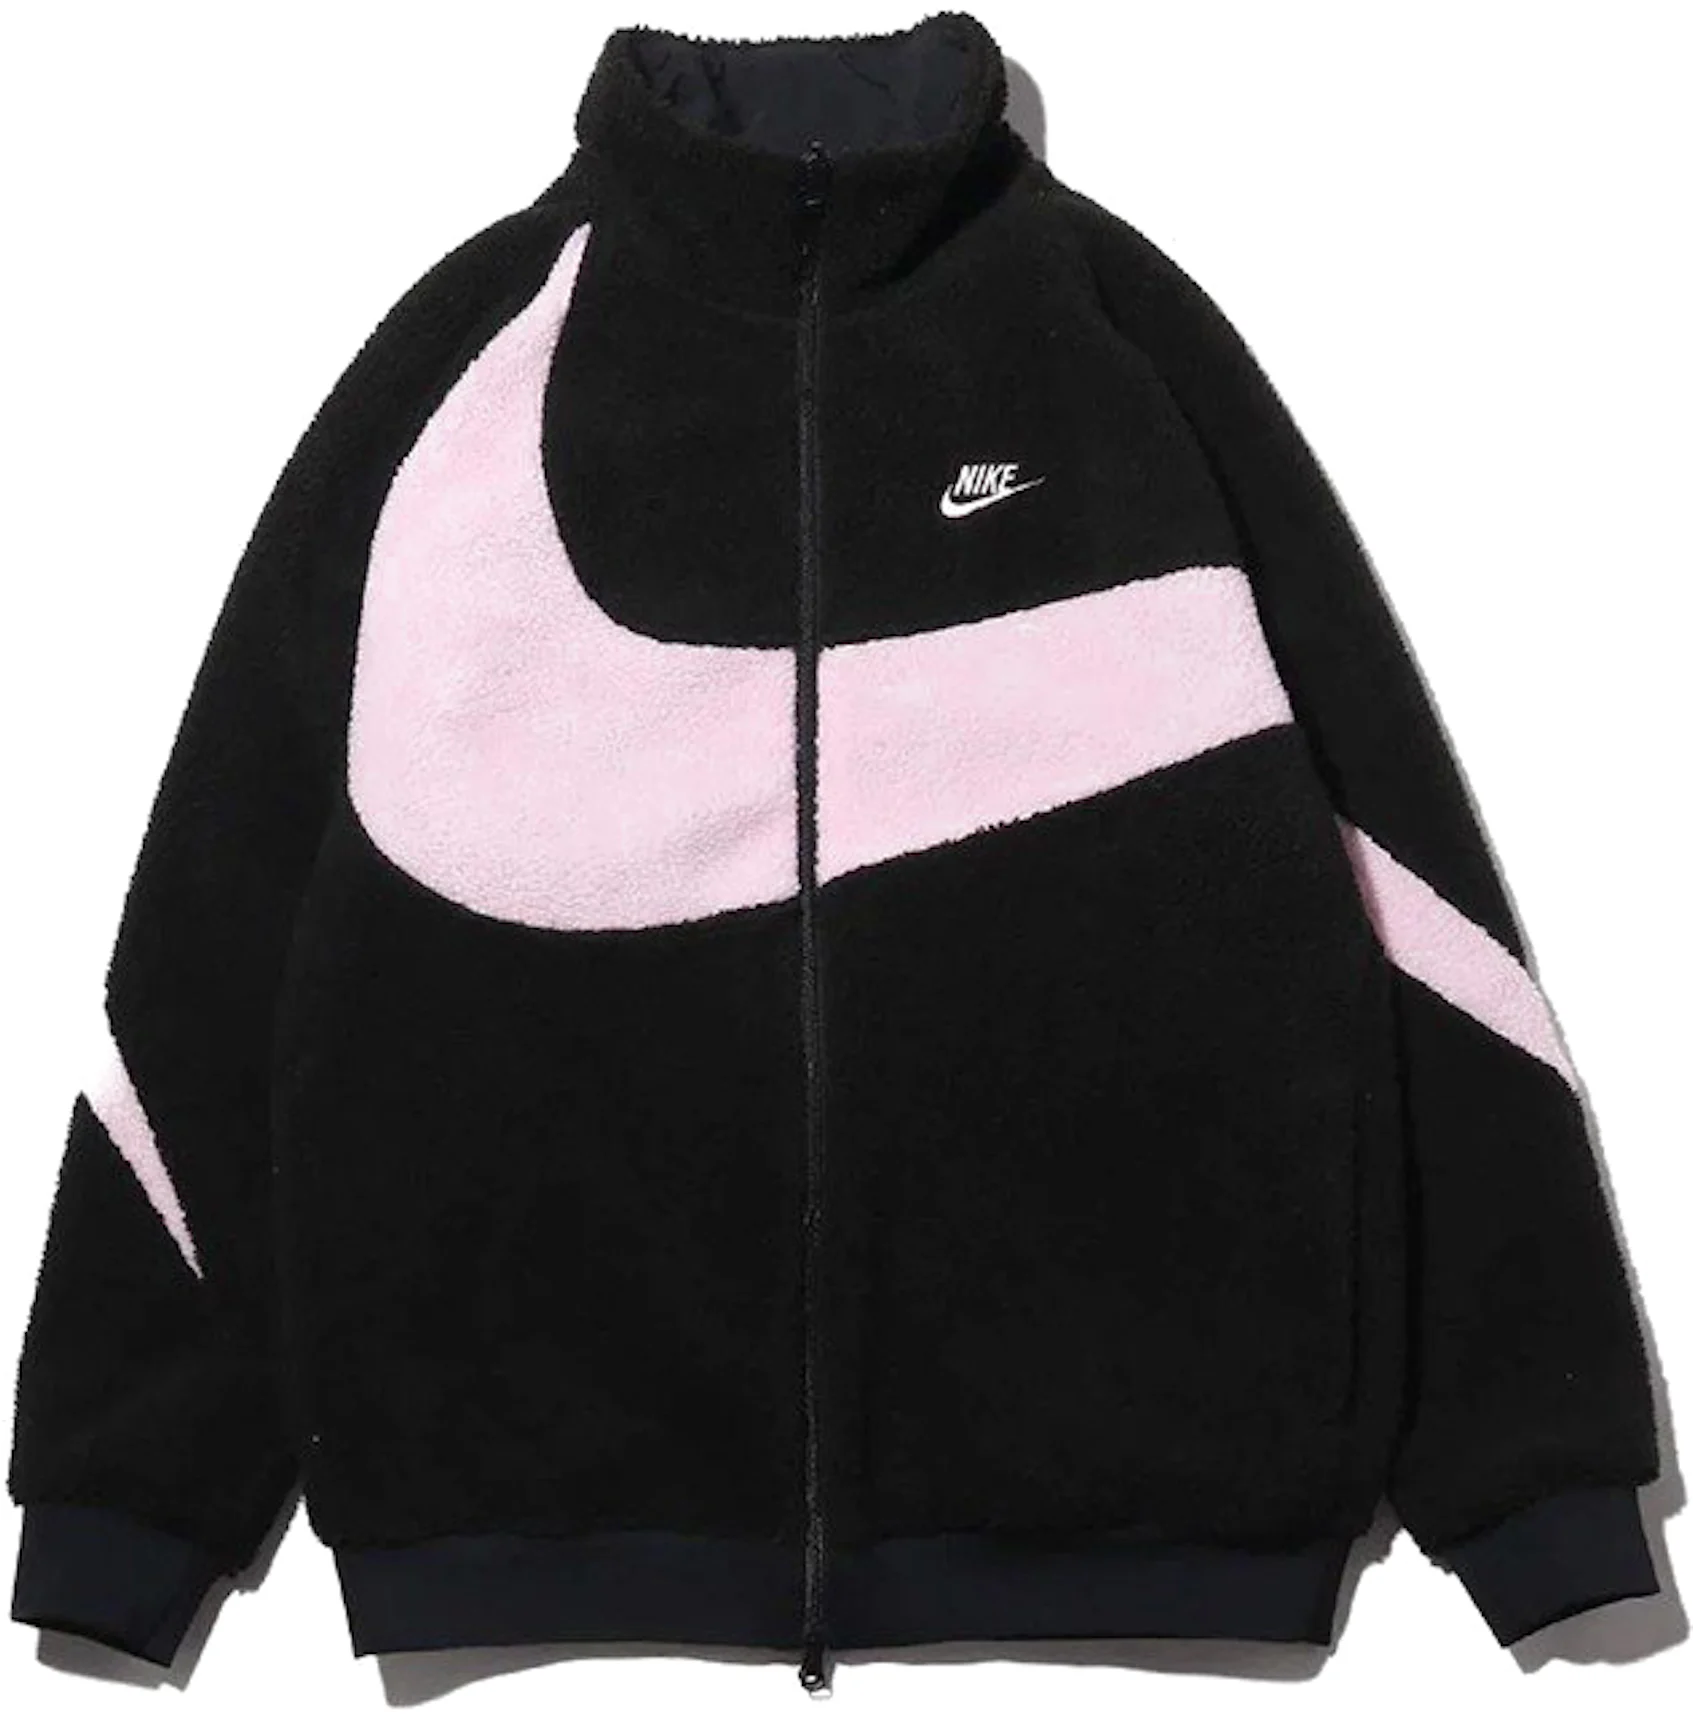 Nike Women's Big Swoosh Reversible Boa Jacket (Asia Sizing) Black Prism Pink